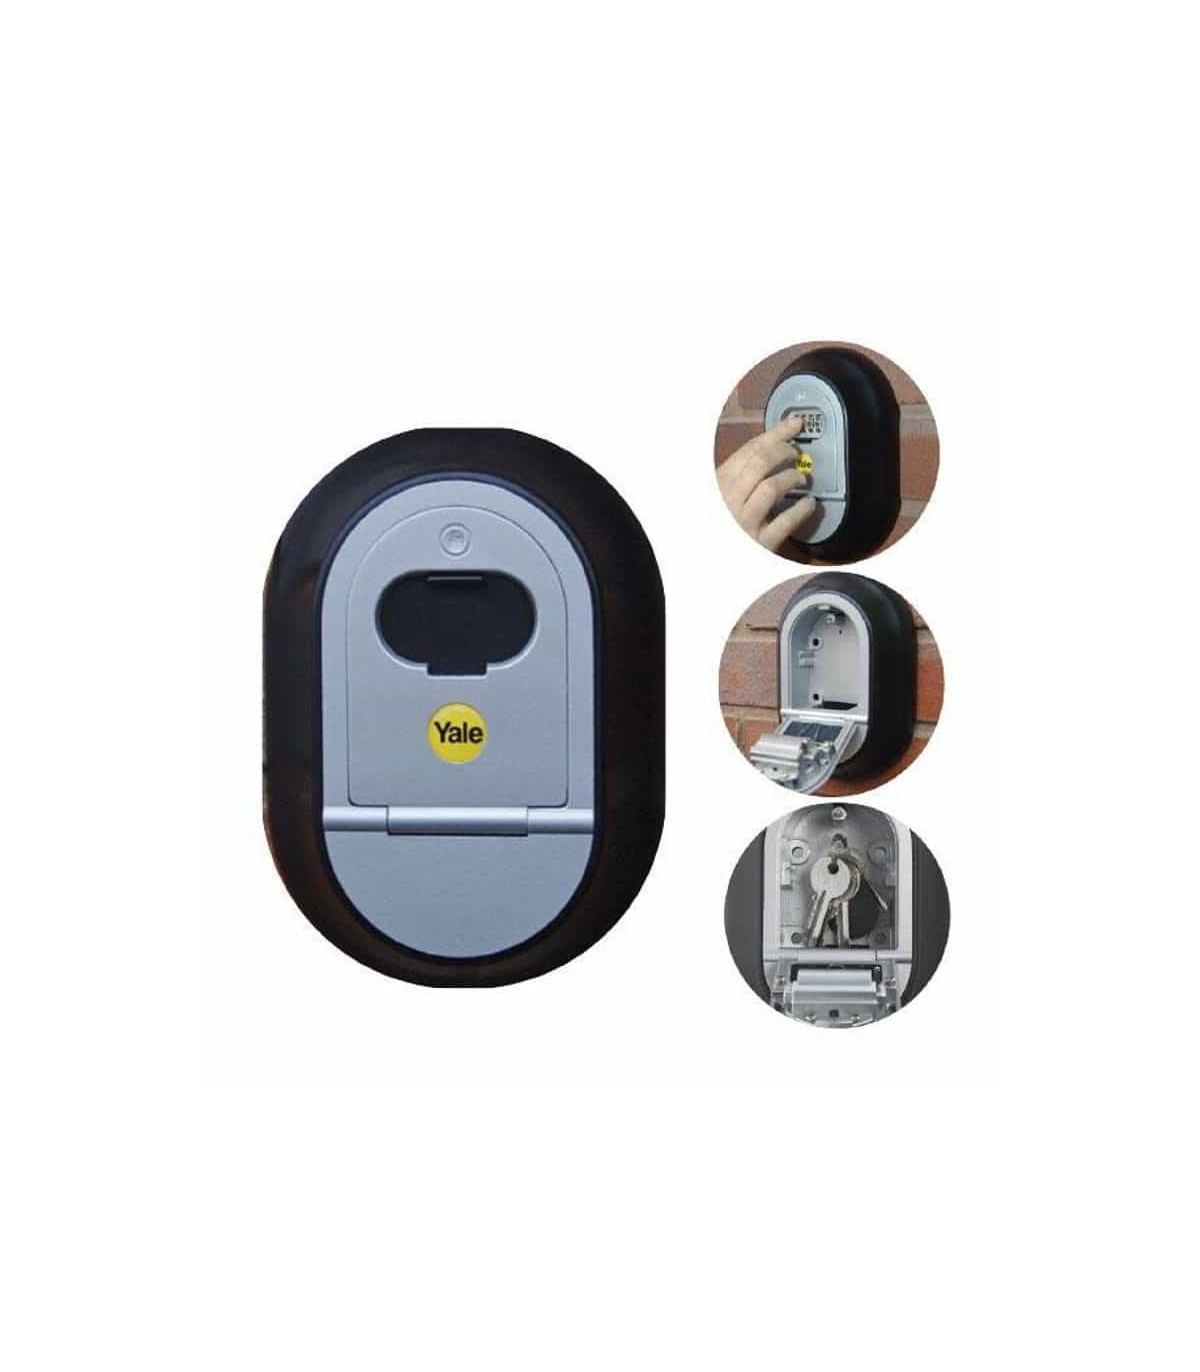 Caja para Custodia De Llaves Y Tarjetas Magnéticas con Código De Seguridad  - Tienda catálogo Cerrajería y seguridad Berma